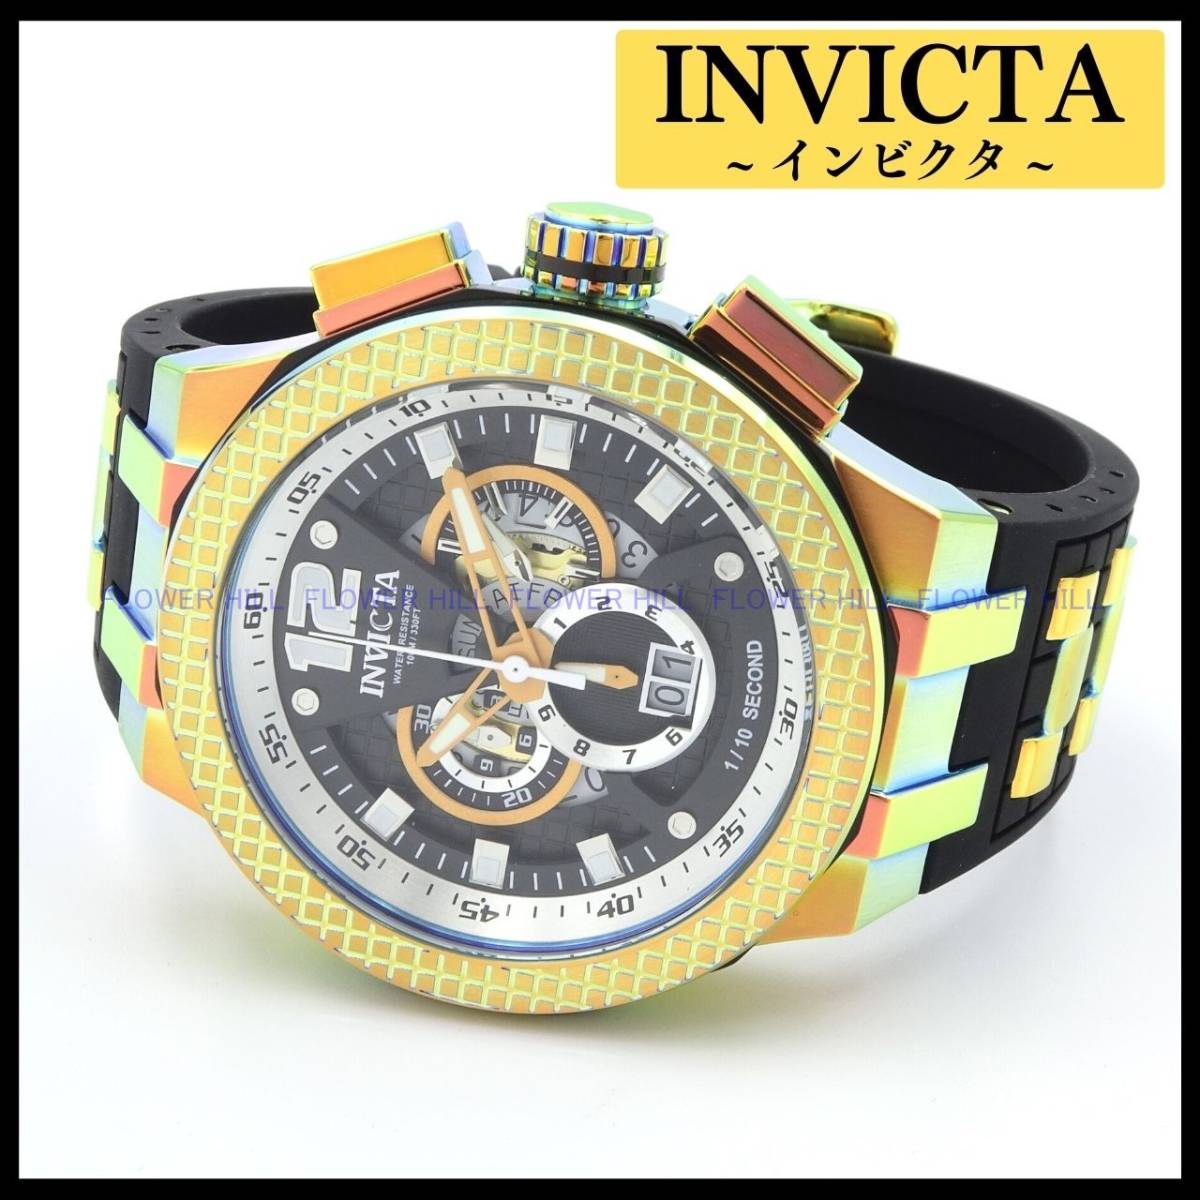 【新品・送料無料】インビクタ INVICTA 腕時計 メンズ SPEED WAY 44281 クォーツ スイスムーブメント クロノグラフ シリコンバンド